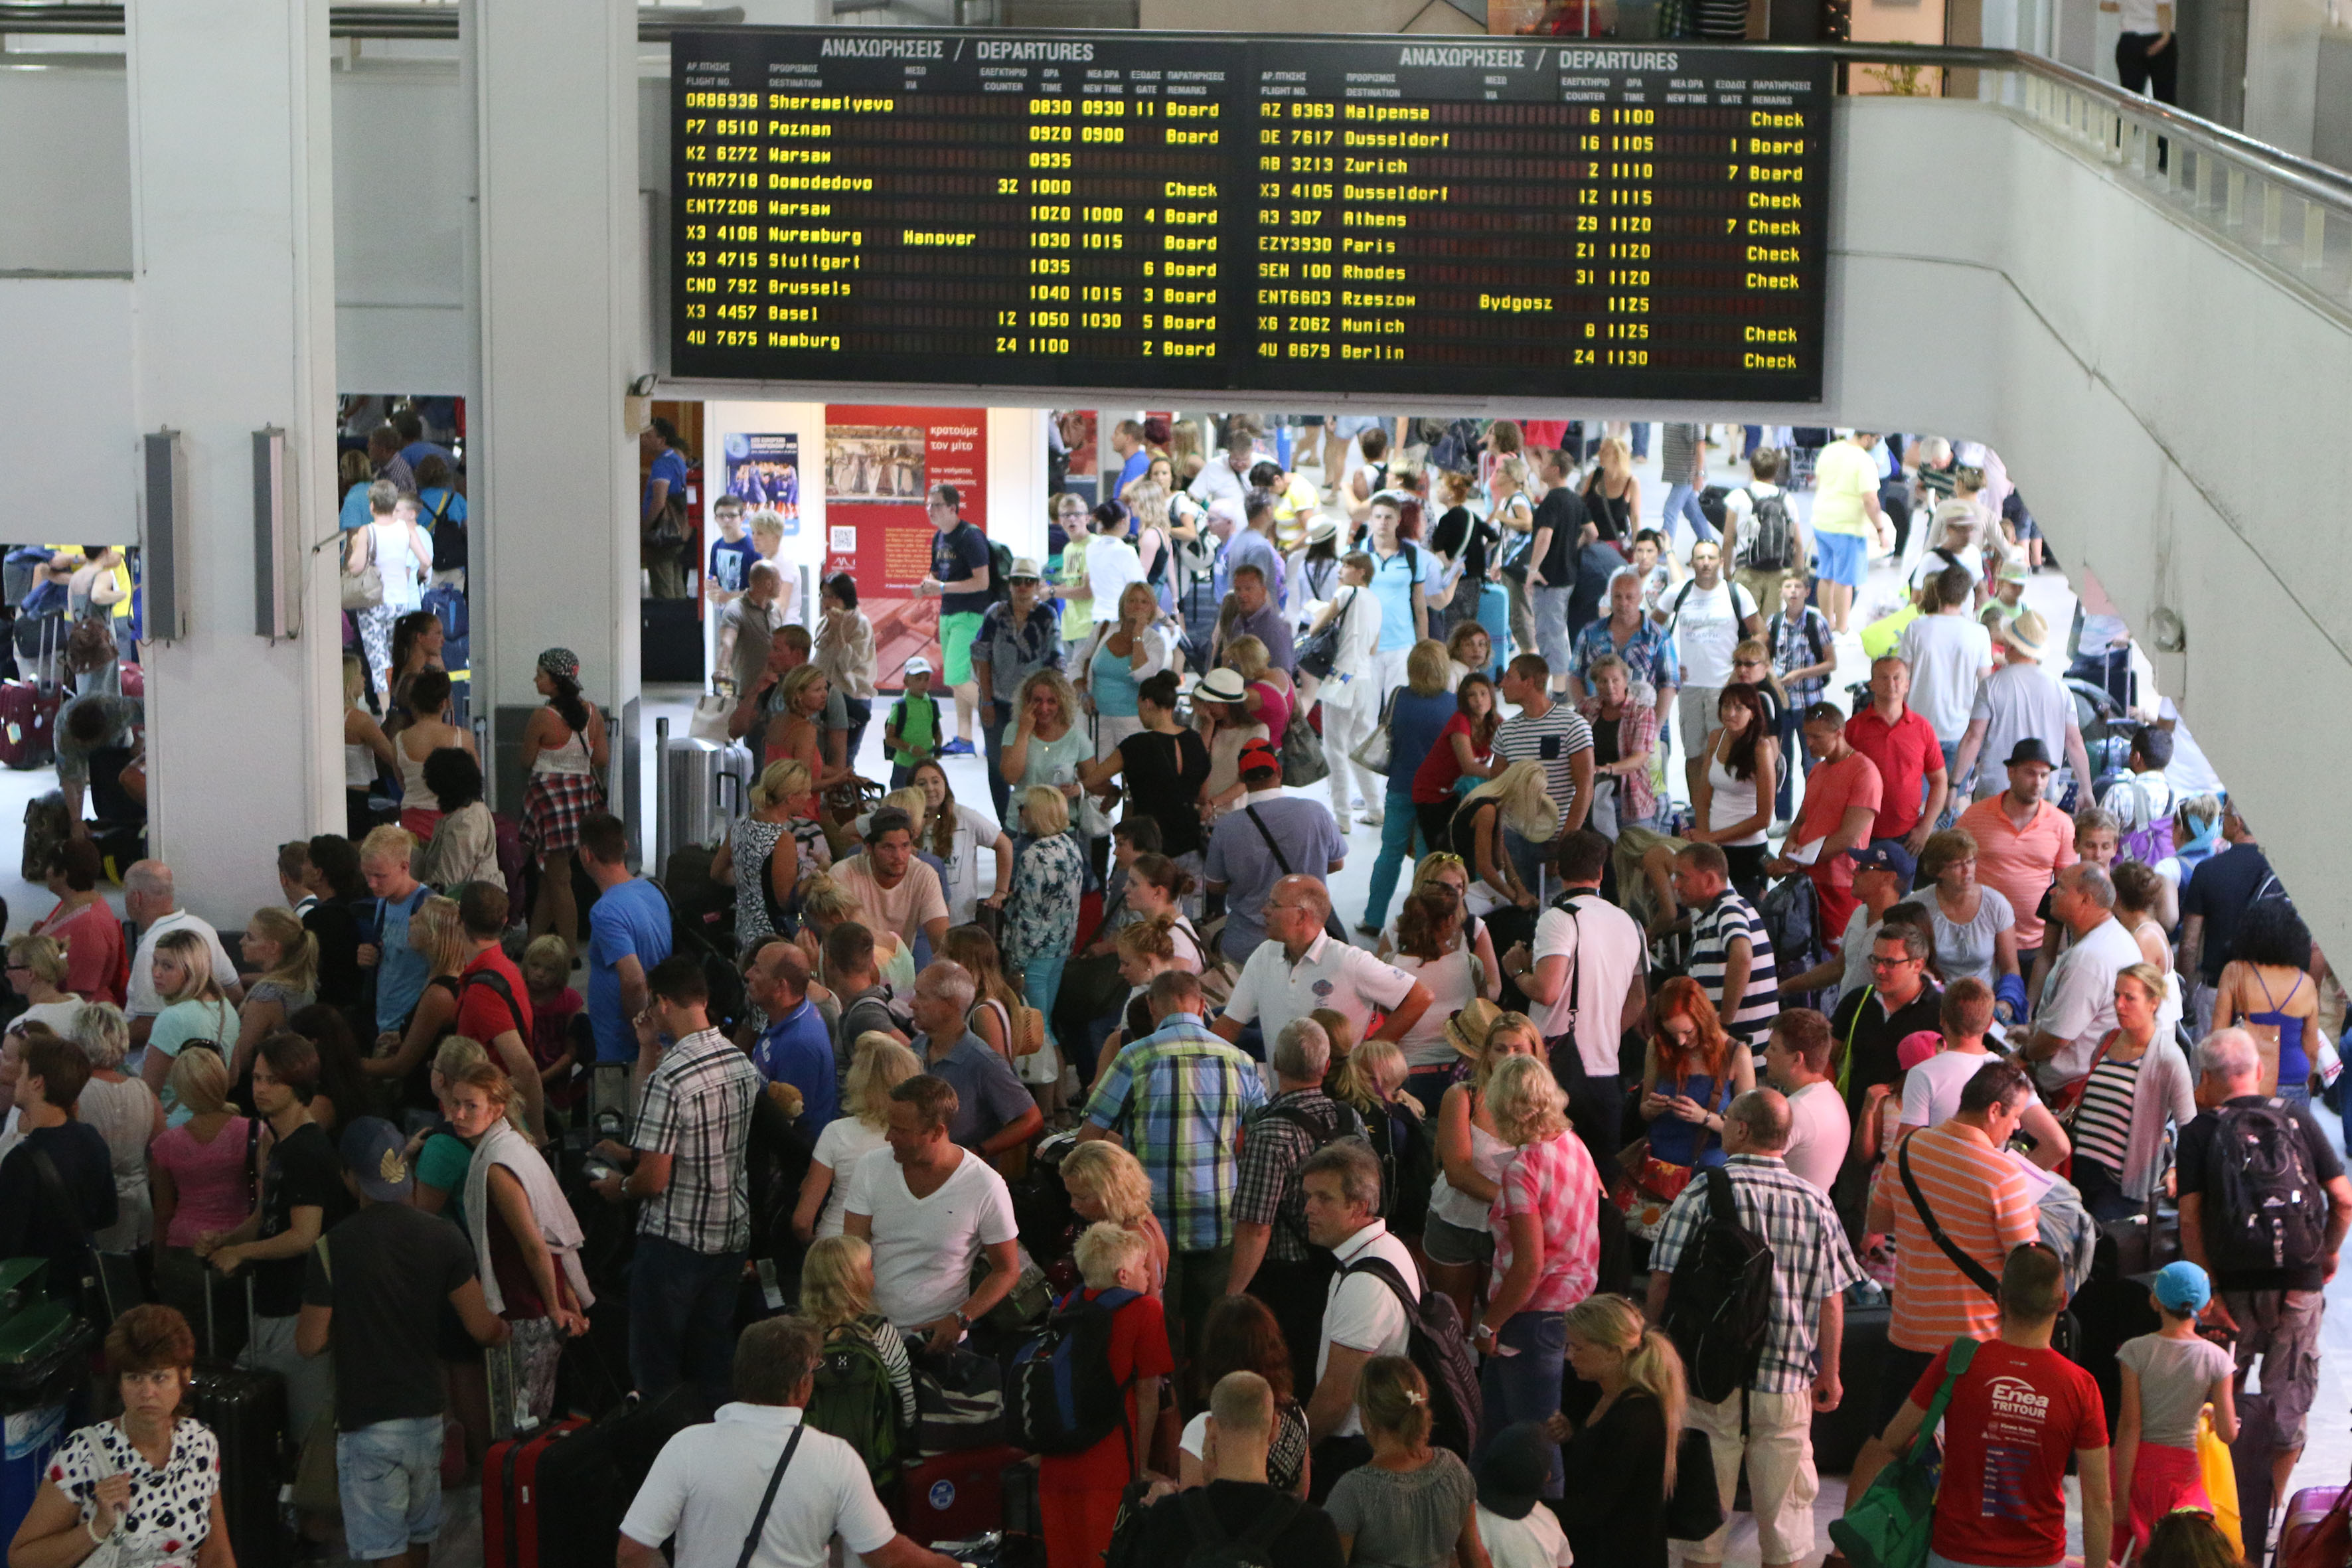 Aύξηση-ρεκόρ καταγράφηκε στην επιβατική κίνηση του αεροδρομίου «Ν. Καζαντζάκης» το 2016